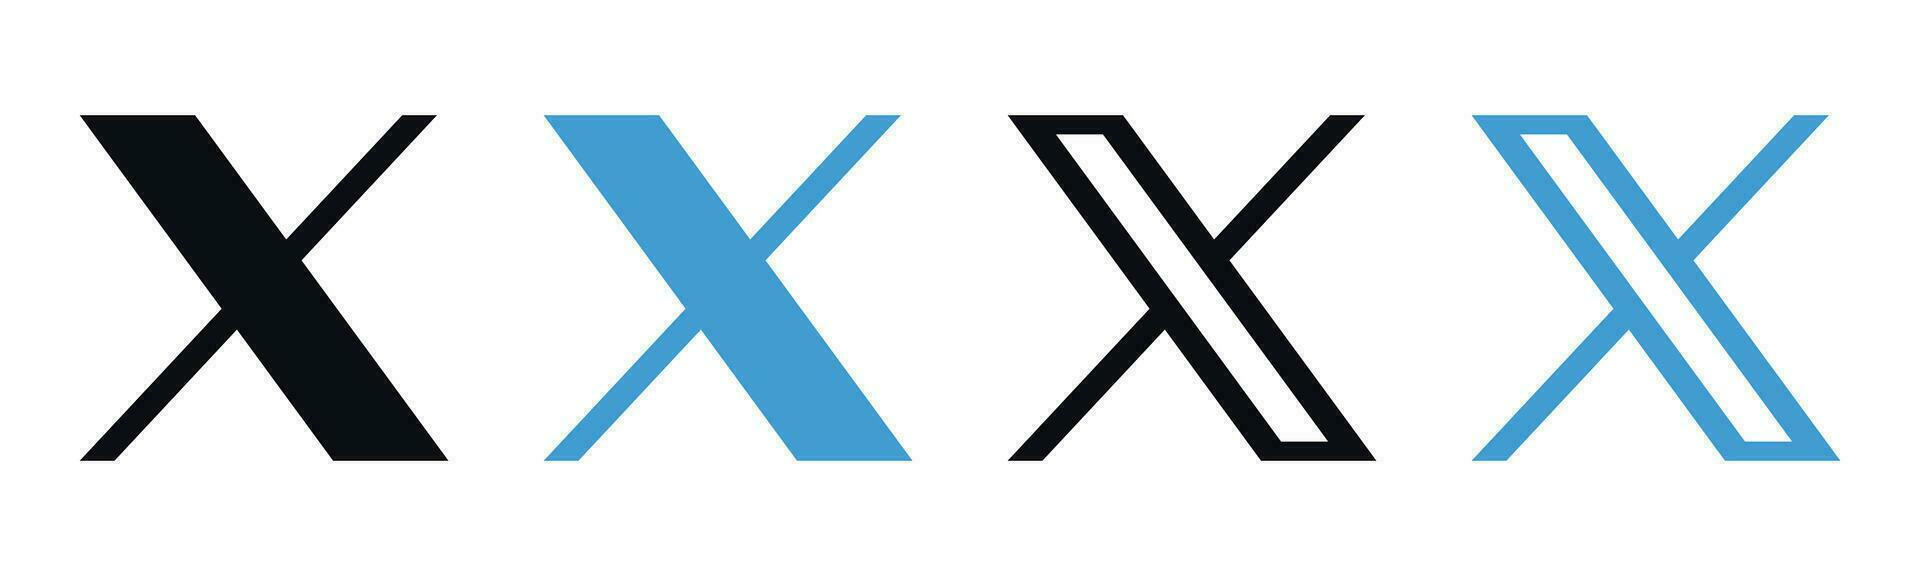 X nuevo gorjeo social medios de comunicación marca logo vector